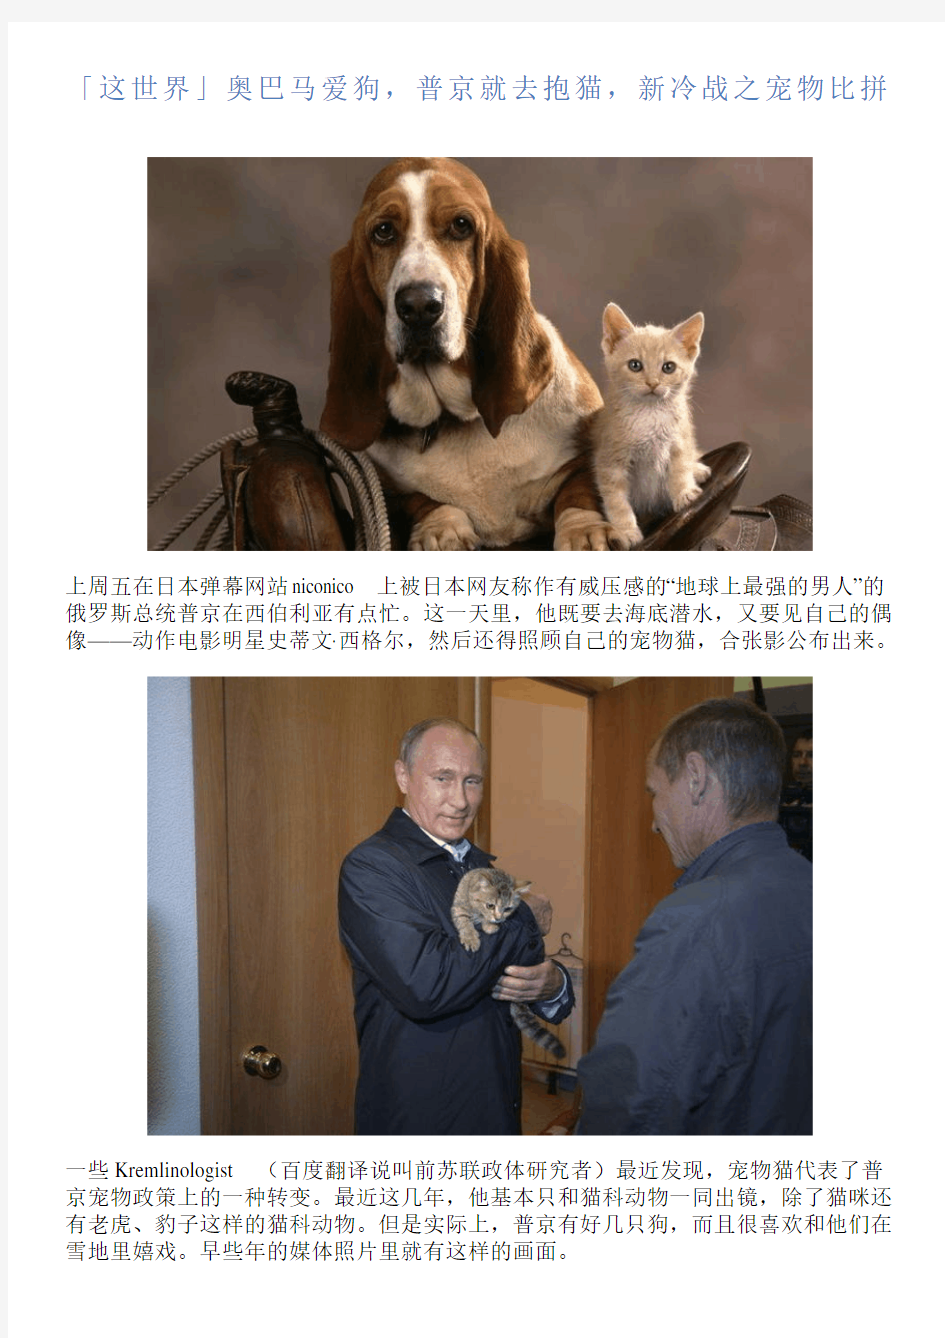 「这世界」奥巴马爱狗,普京就去抱猫,新冷战之宠物比拼